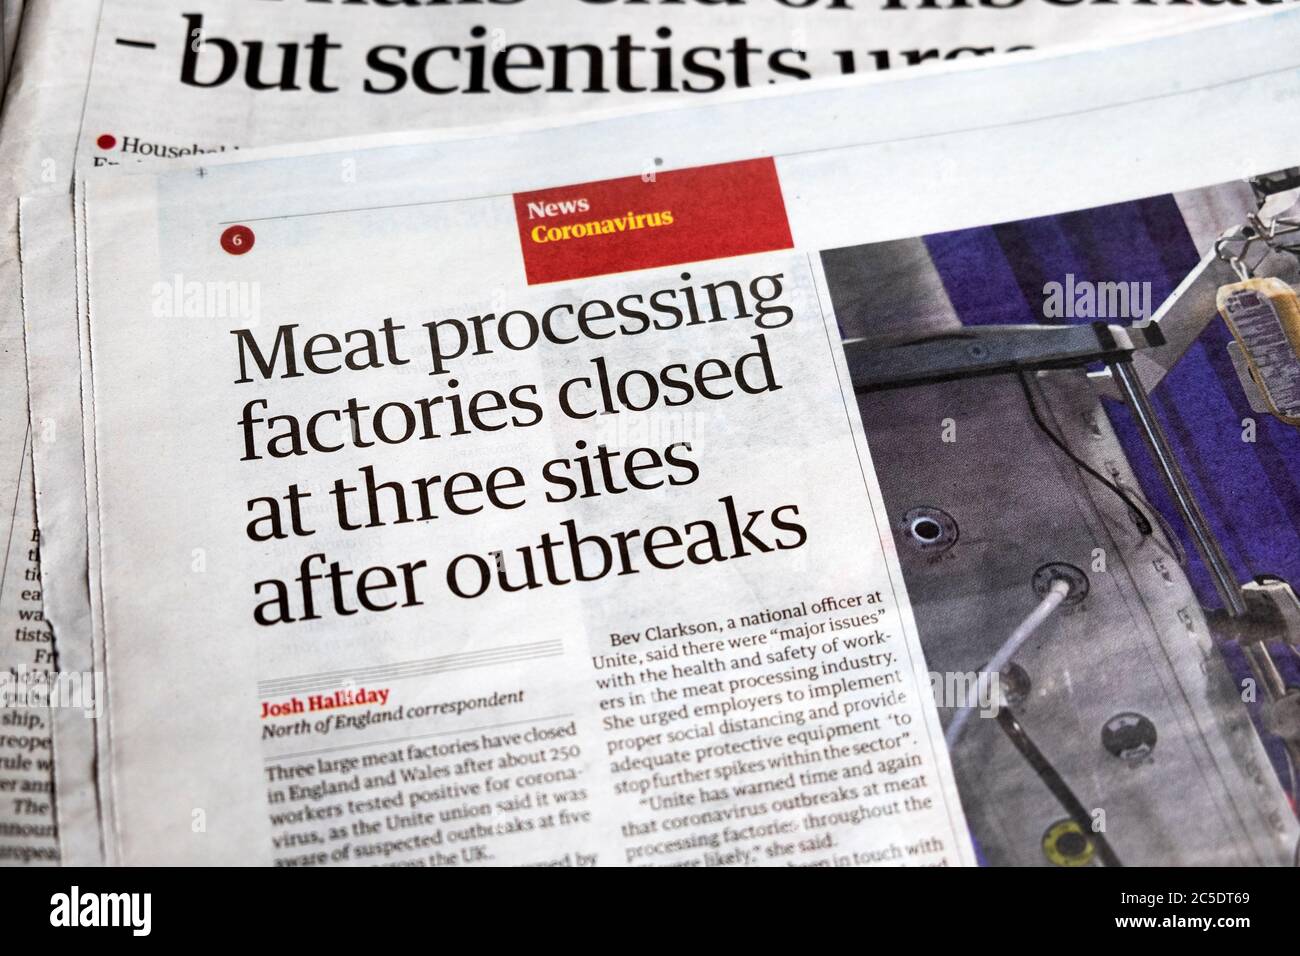 « fermeture des usines de traitement des aliments sur trois sites après les épidémies », titre du journal The Guardian, article 20 juin 2020 Banque D'Images